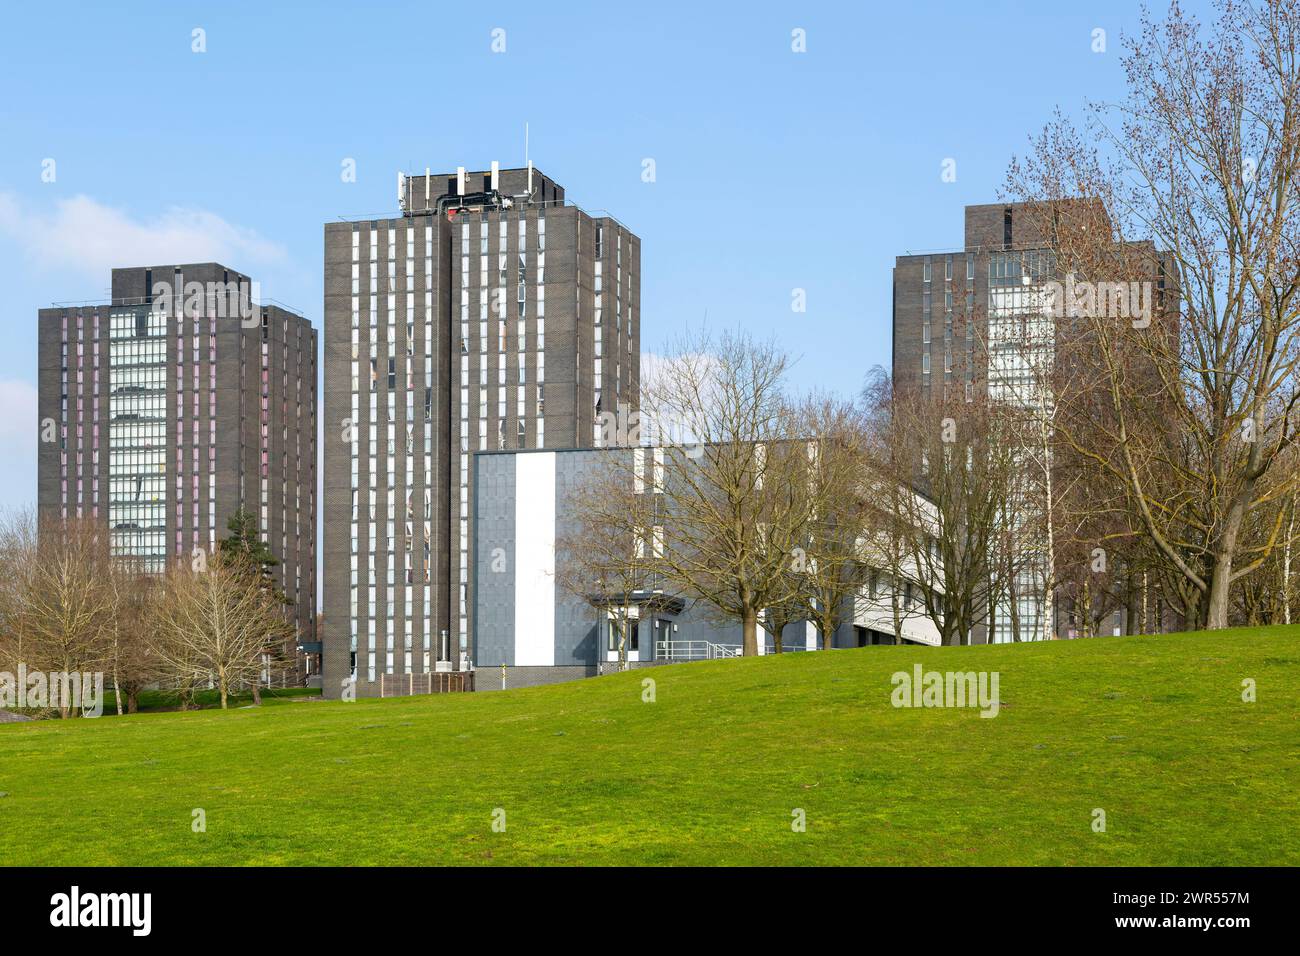 Grattacieli per studenti, North Towers, University of Essex, Colchester, Essex, Inghilterra, Regno Unito Foto Stock